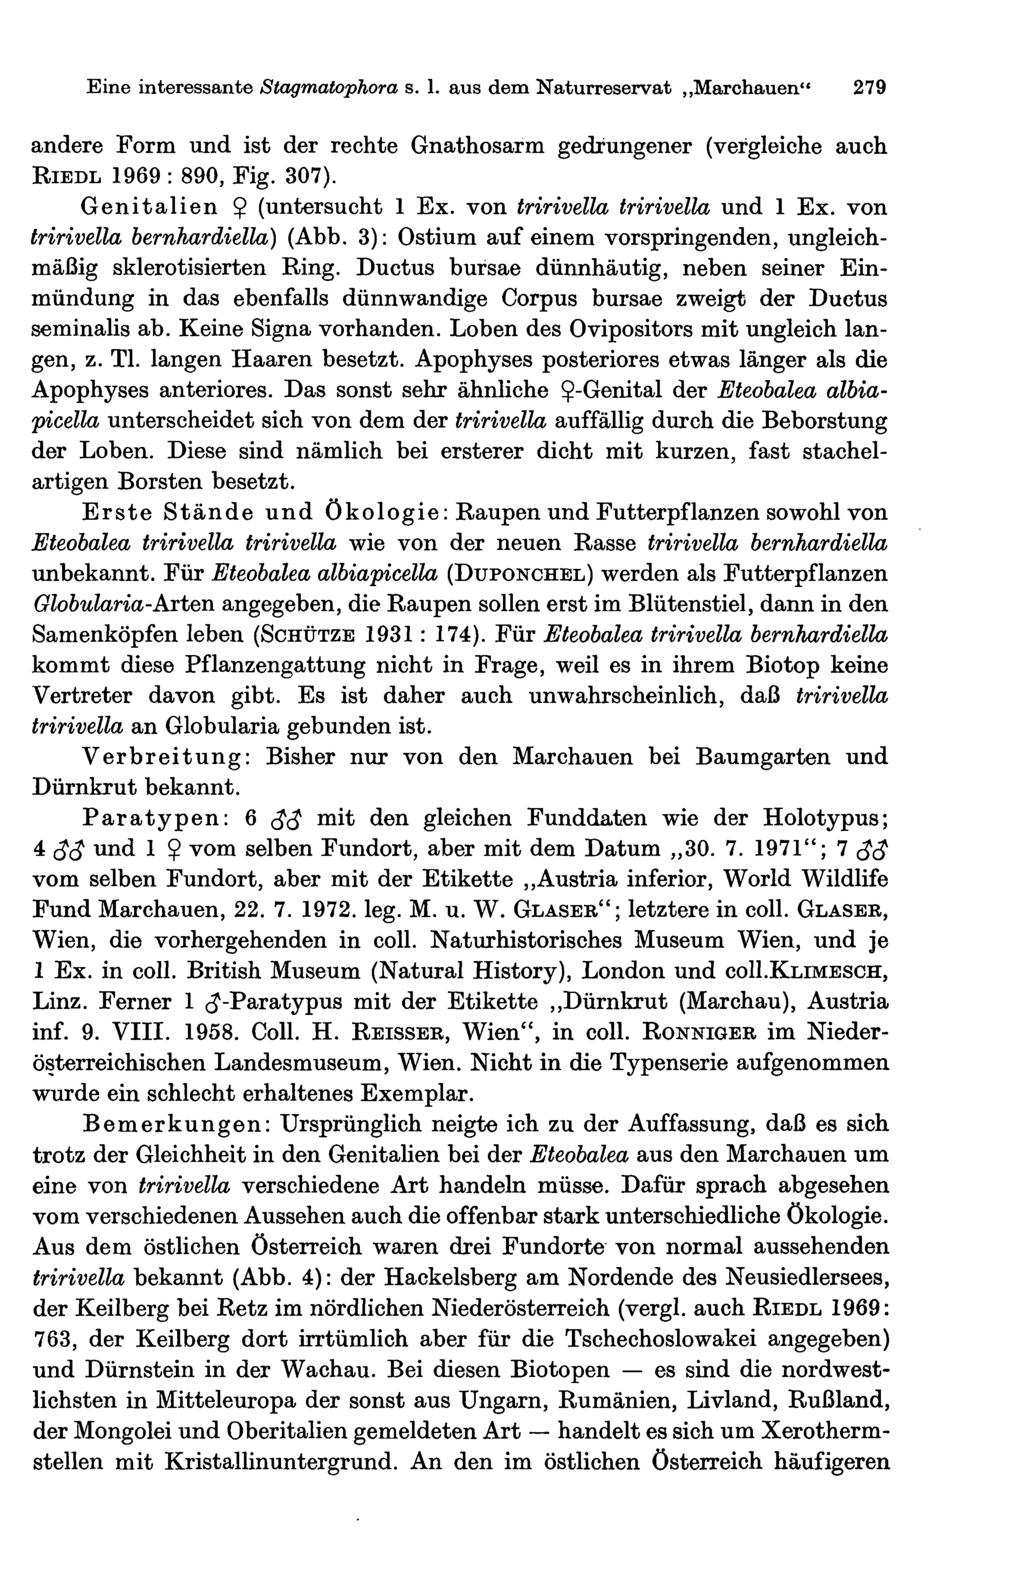 Eine interessante Stagmatophora s. 1. aus dem Naturreservat Marchauen" 279 andere Form und ist der rechte Gnathosarm gedrungener (vergleiche auch RIEDL 1969 : 890, Fig. 307).